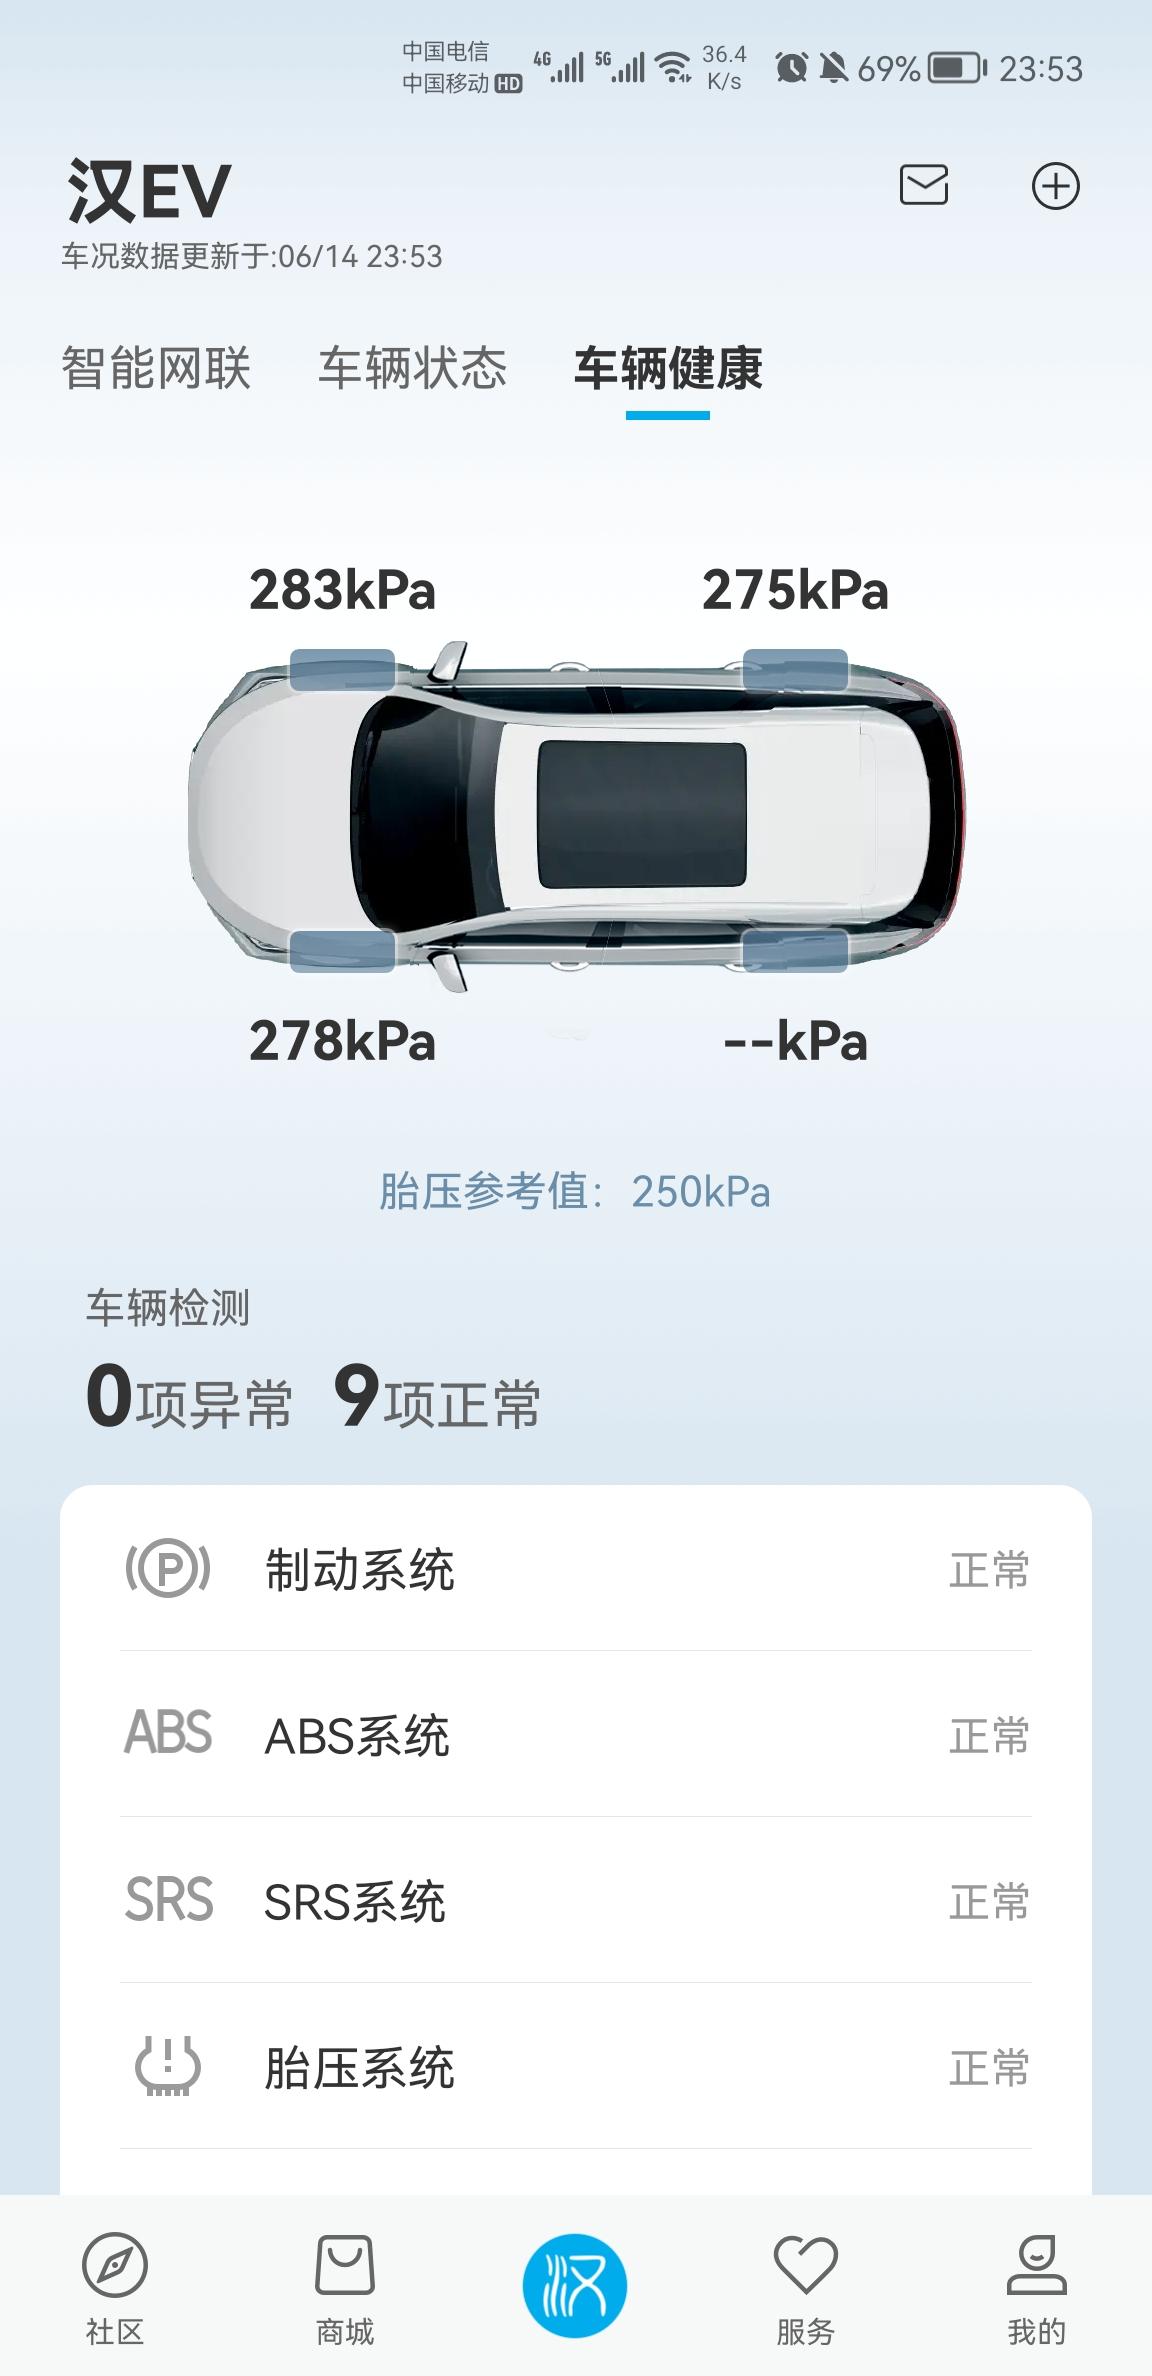 比亚迪汉EV app不显示左后轮的胎压。车内胎压显示正常